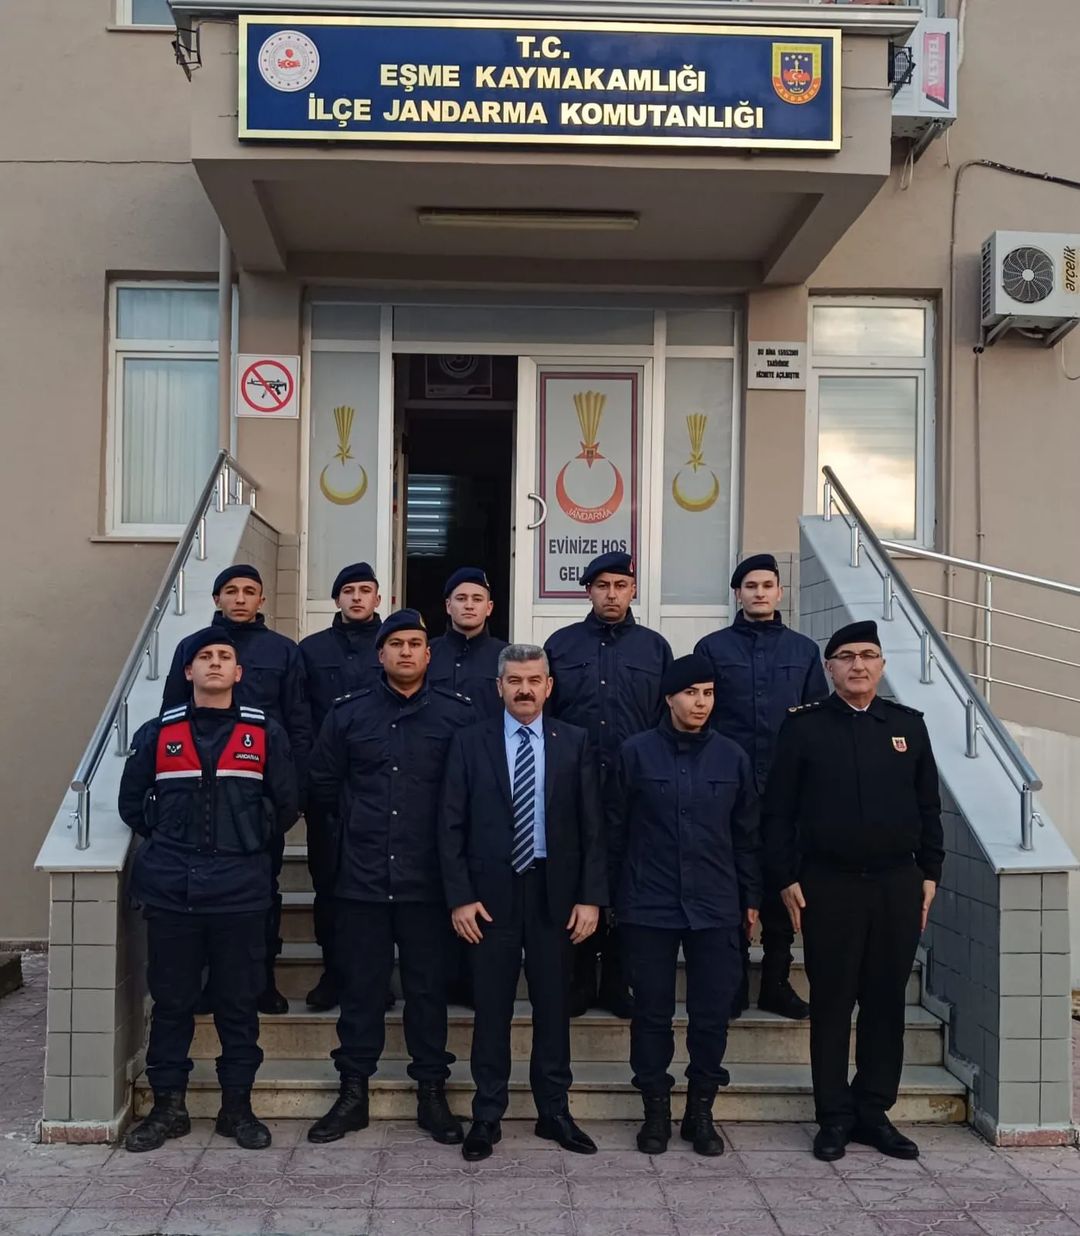 Uşak Valisi Ergün, Eşme İlçe Jandarma Komutanlığını ziyaret ederek Jandarma personeli ile bir araya geldi, görevlerin…